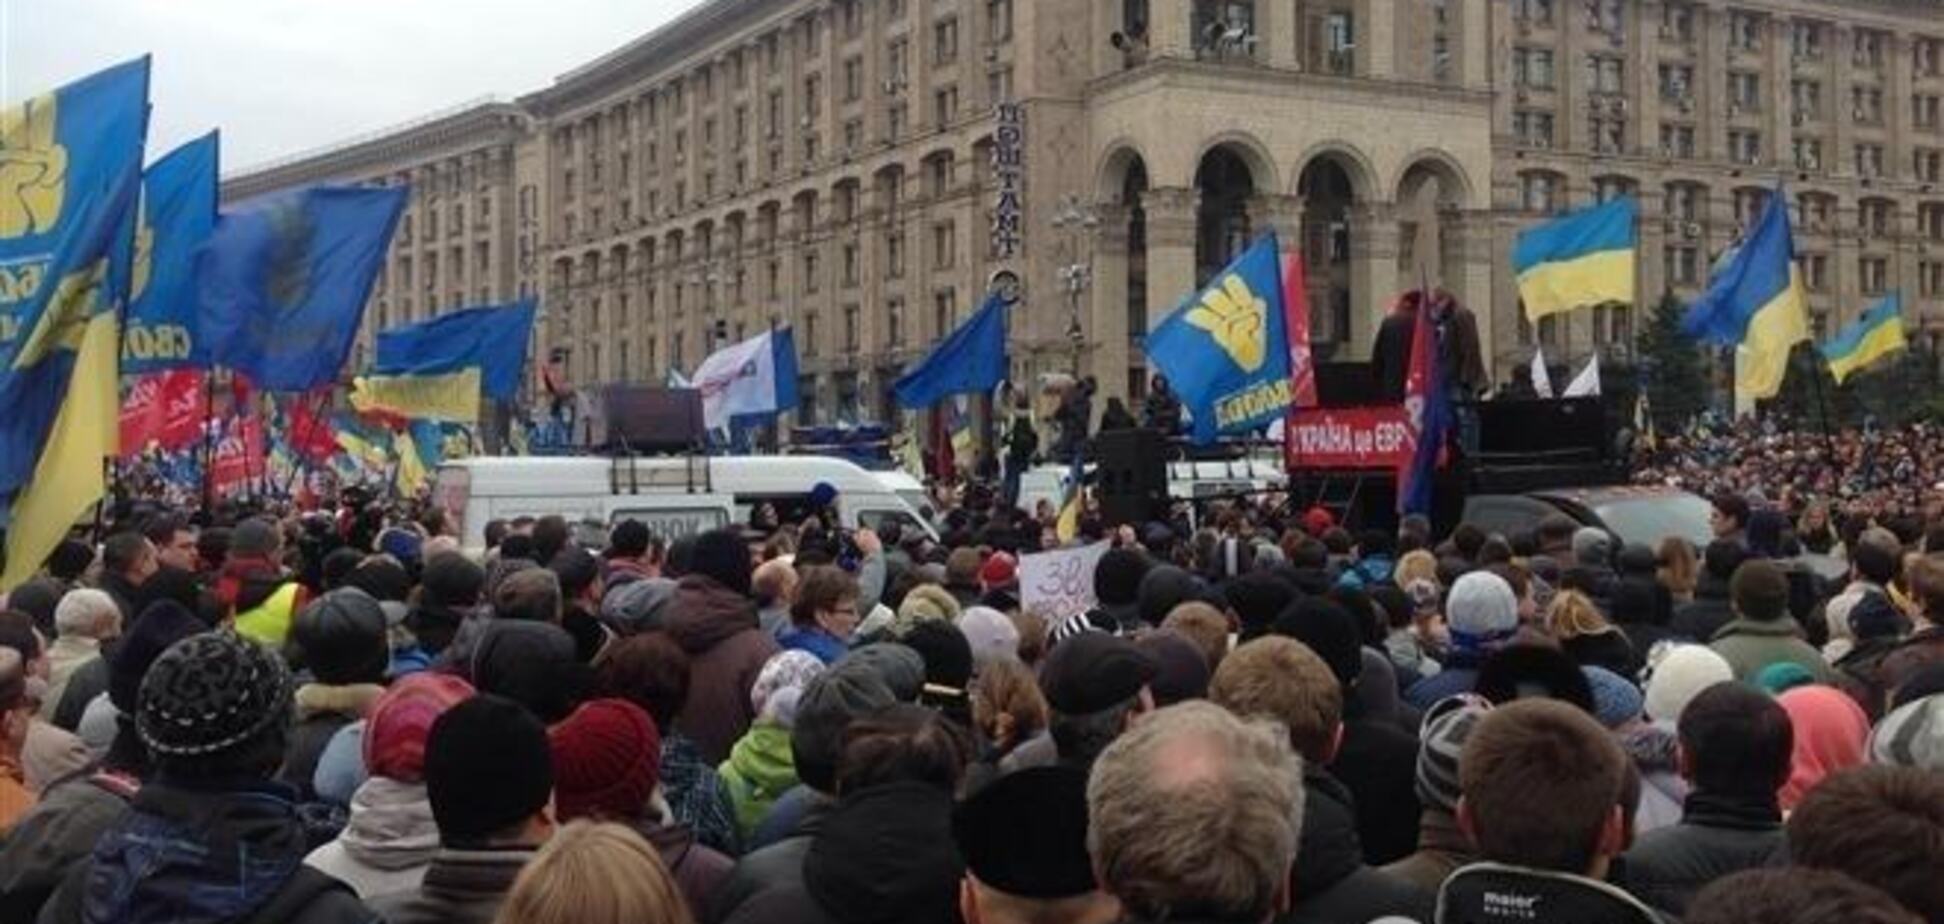 Раввины призывают украинцев воздержаться от применения силы на митингах